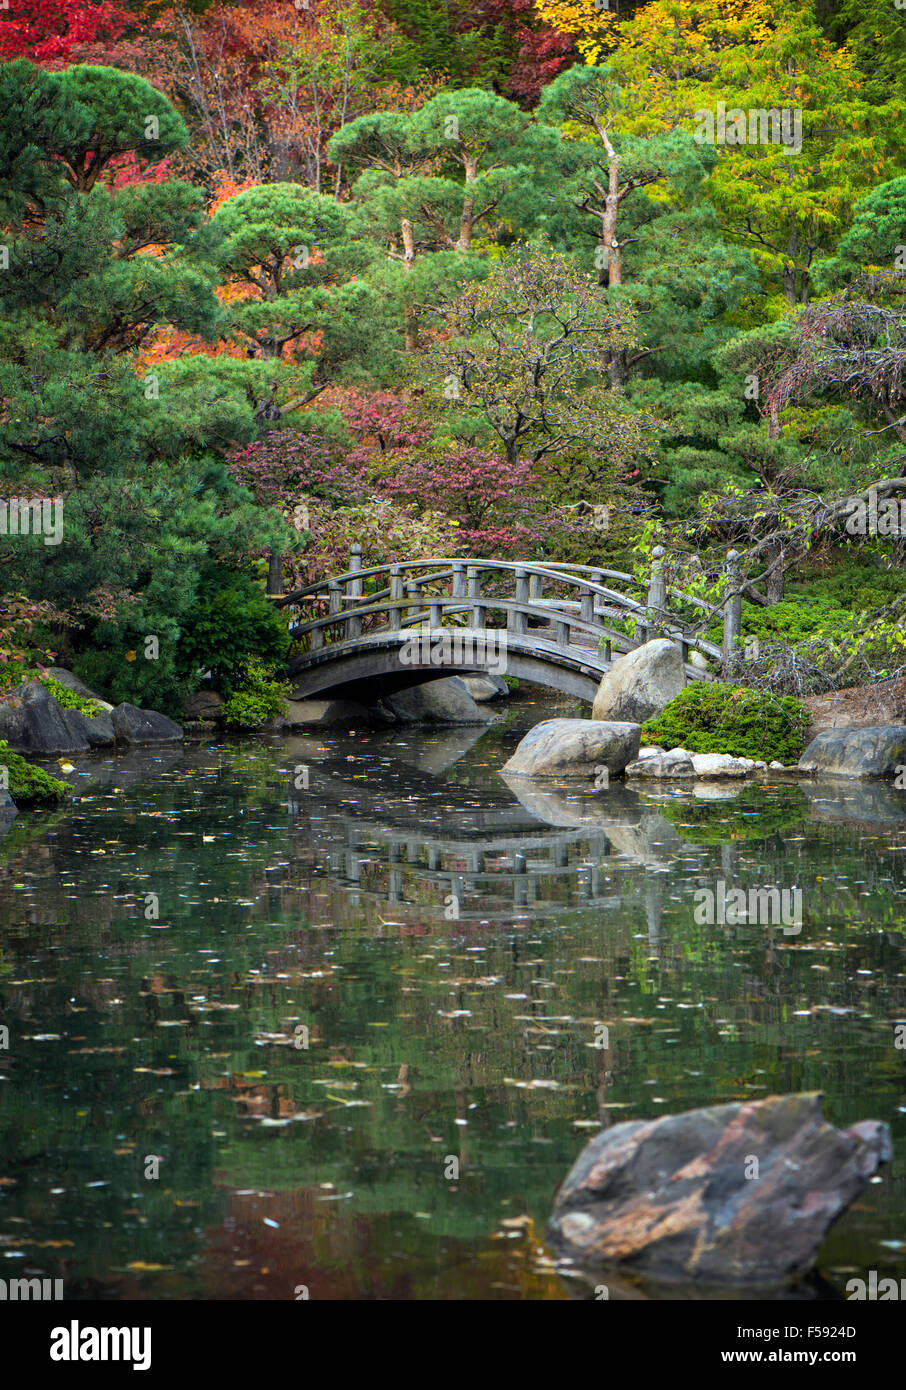 Ponte tranquilla in un giardino asiatico con i colori dell'autunno e acque calme. Foto Stock